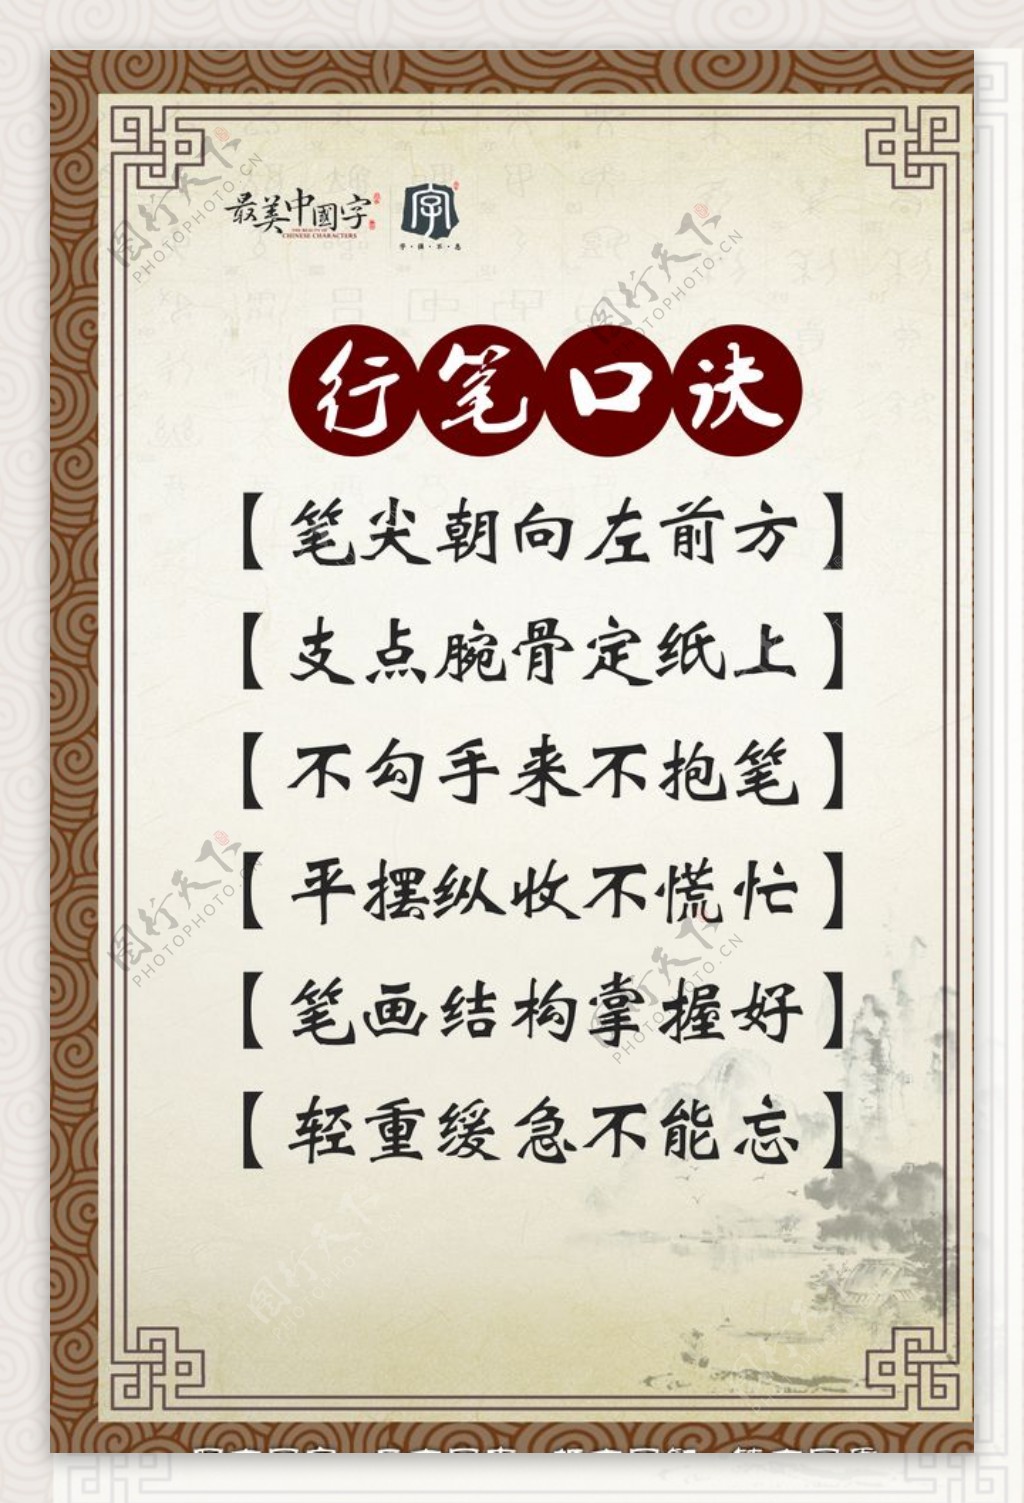 最美中国字海报